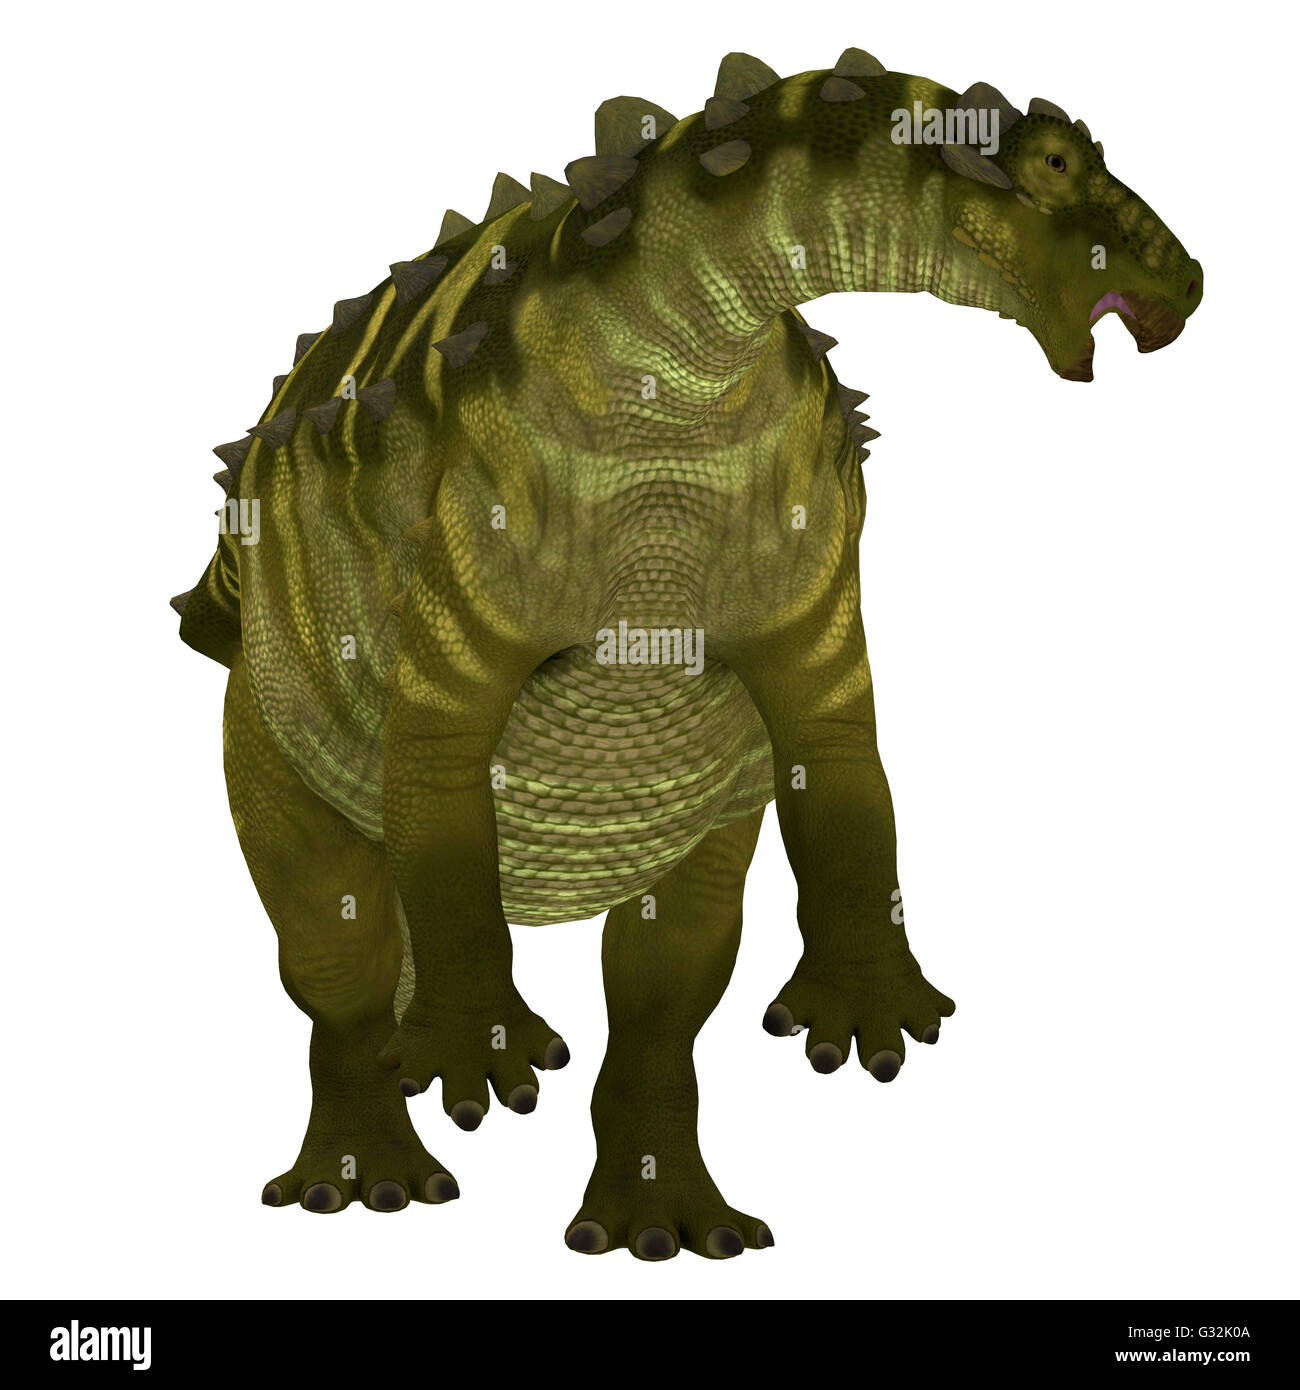 Talarurus était un dinosaure herbivore armored qui vivait dans la période du Crétacé de la Mongolie. Banque D'Images